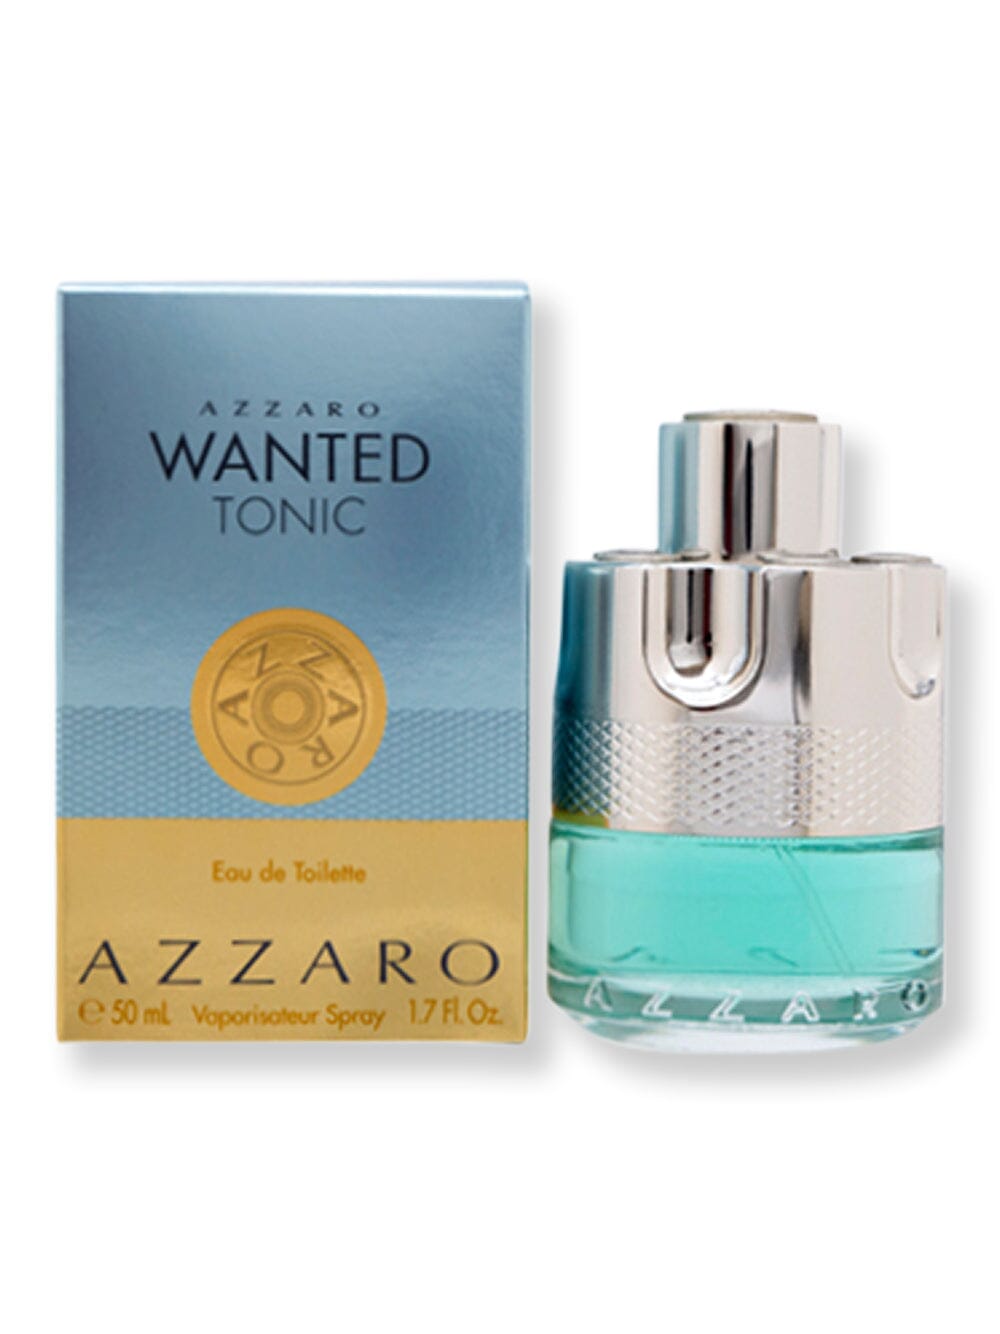 Azzaro Azzaro Wanted Tonic EDT Spray 1.7 oz50 ml Perfume 